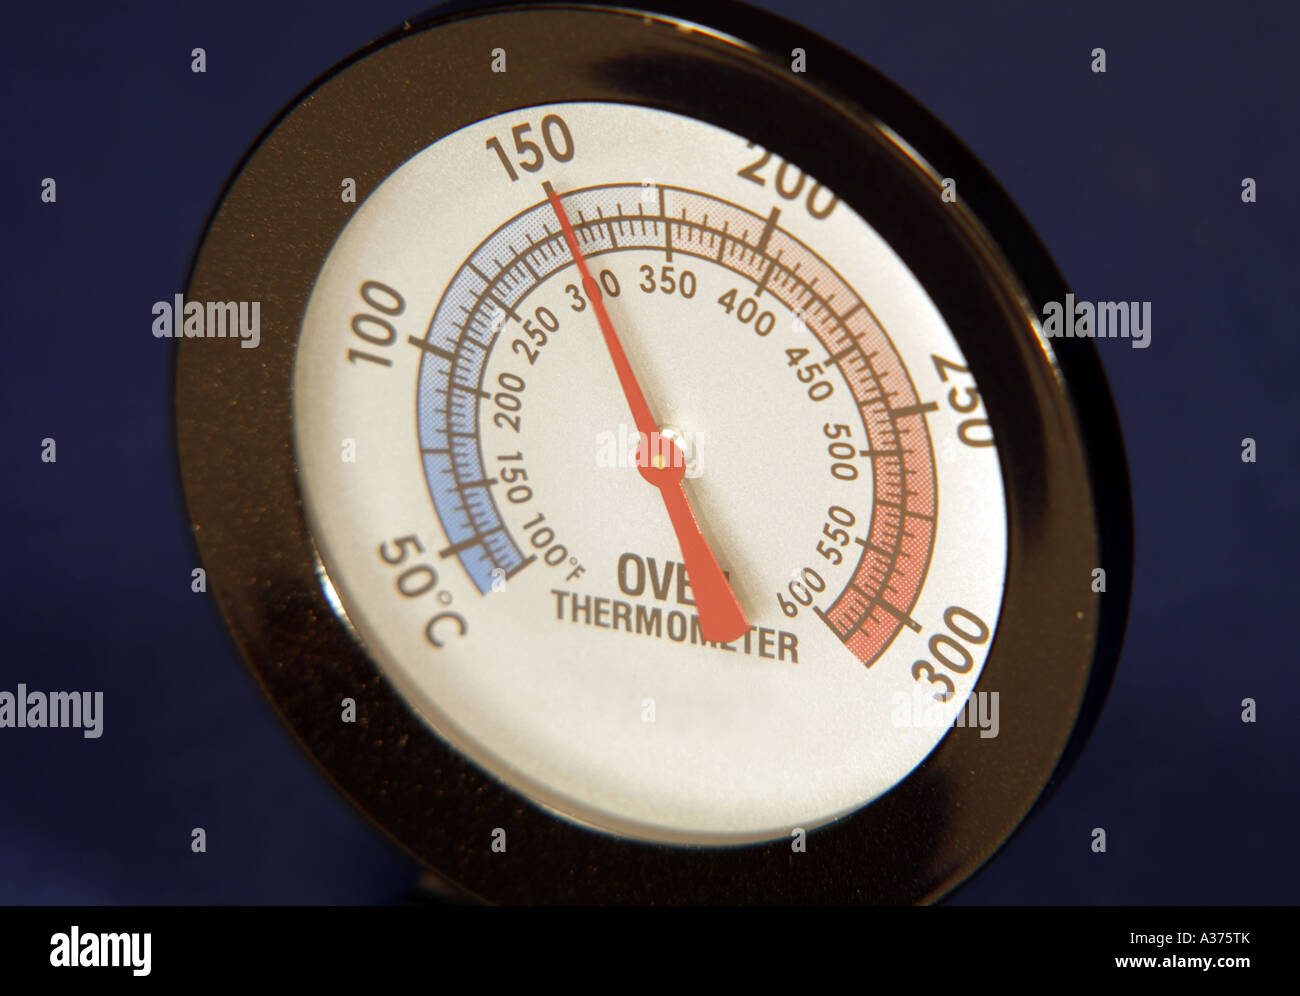 Lectura del termómetro de horno a 150 grados centígrados Foto de stock